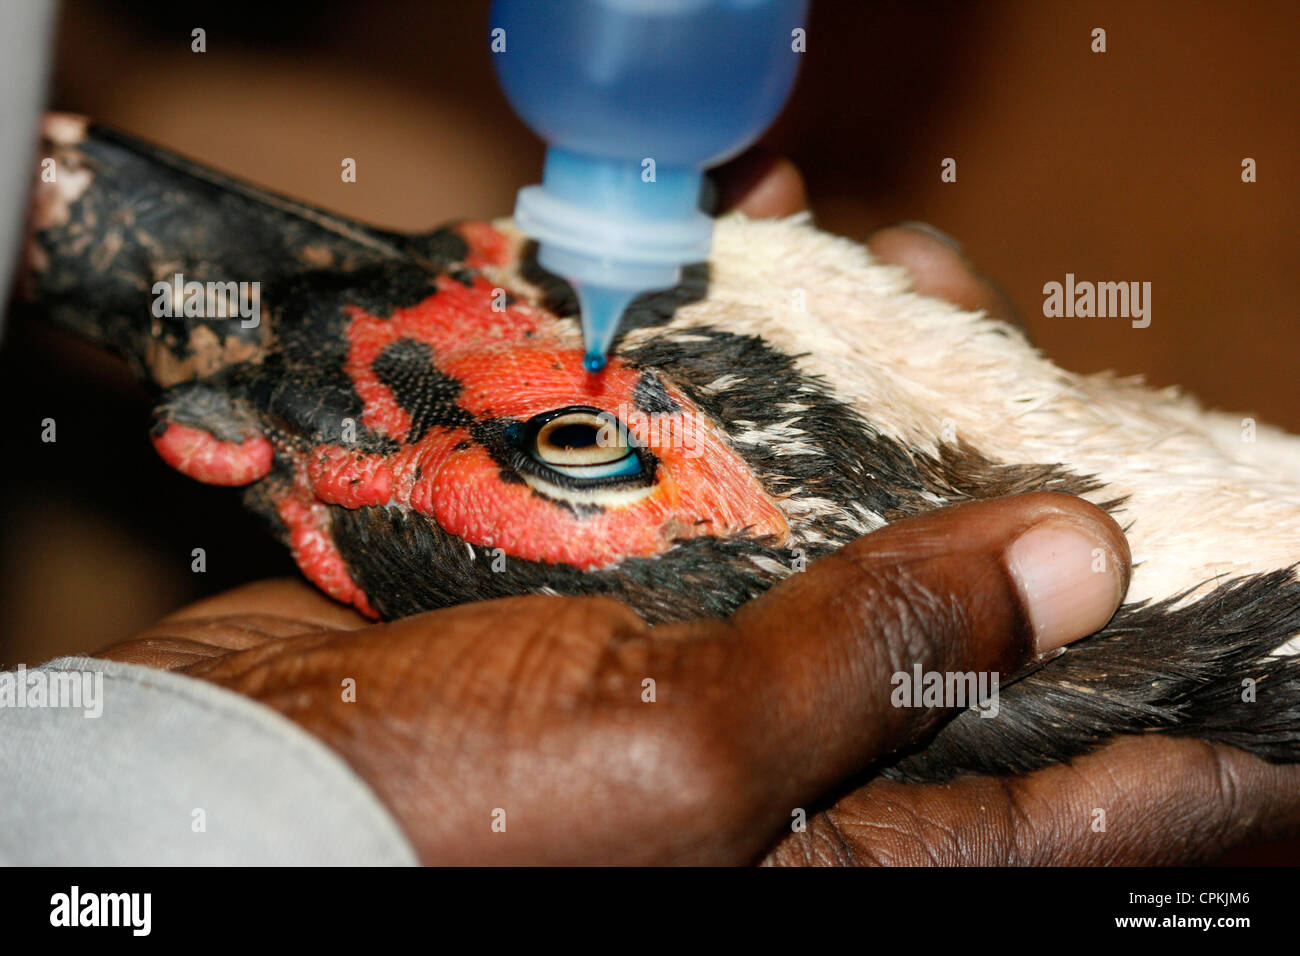 Un vet in Uganda la vaccinazione di un anatra contro la malattia di Newcastle mediante gocciolamento vaccino nell'anatra's eye Foto Stock